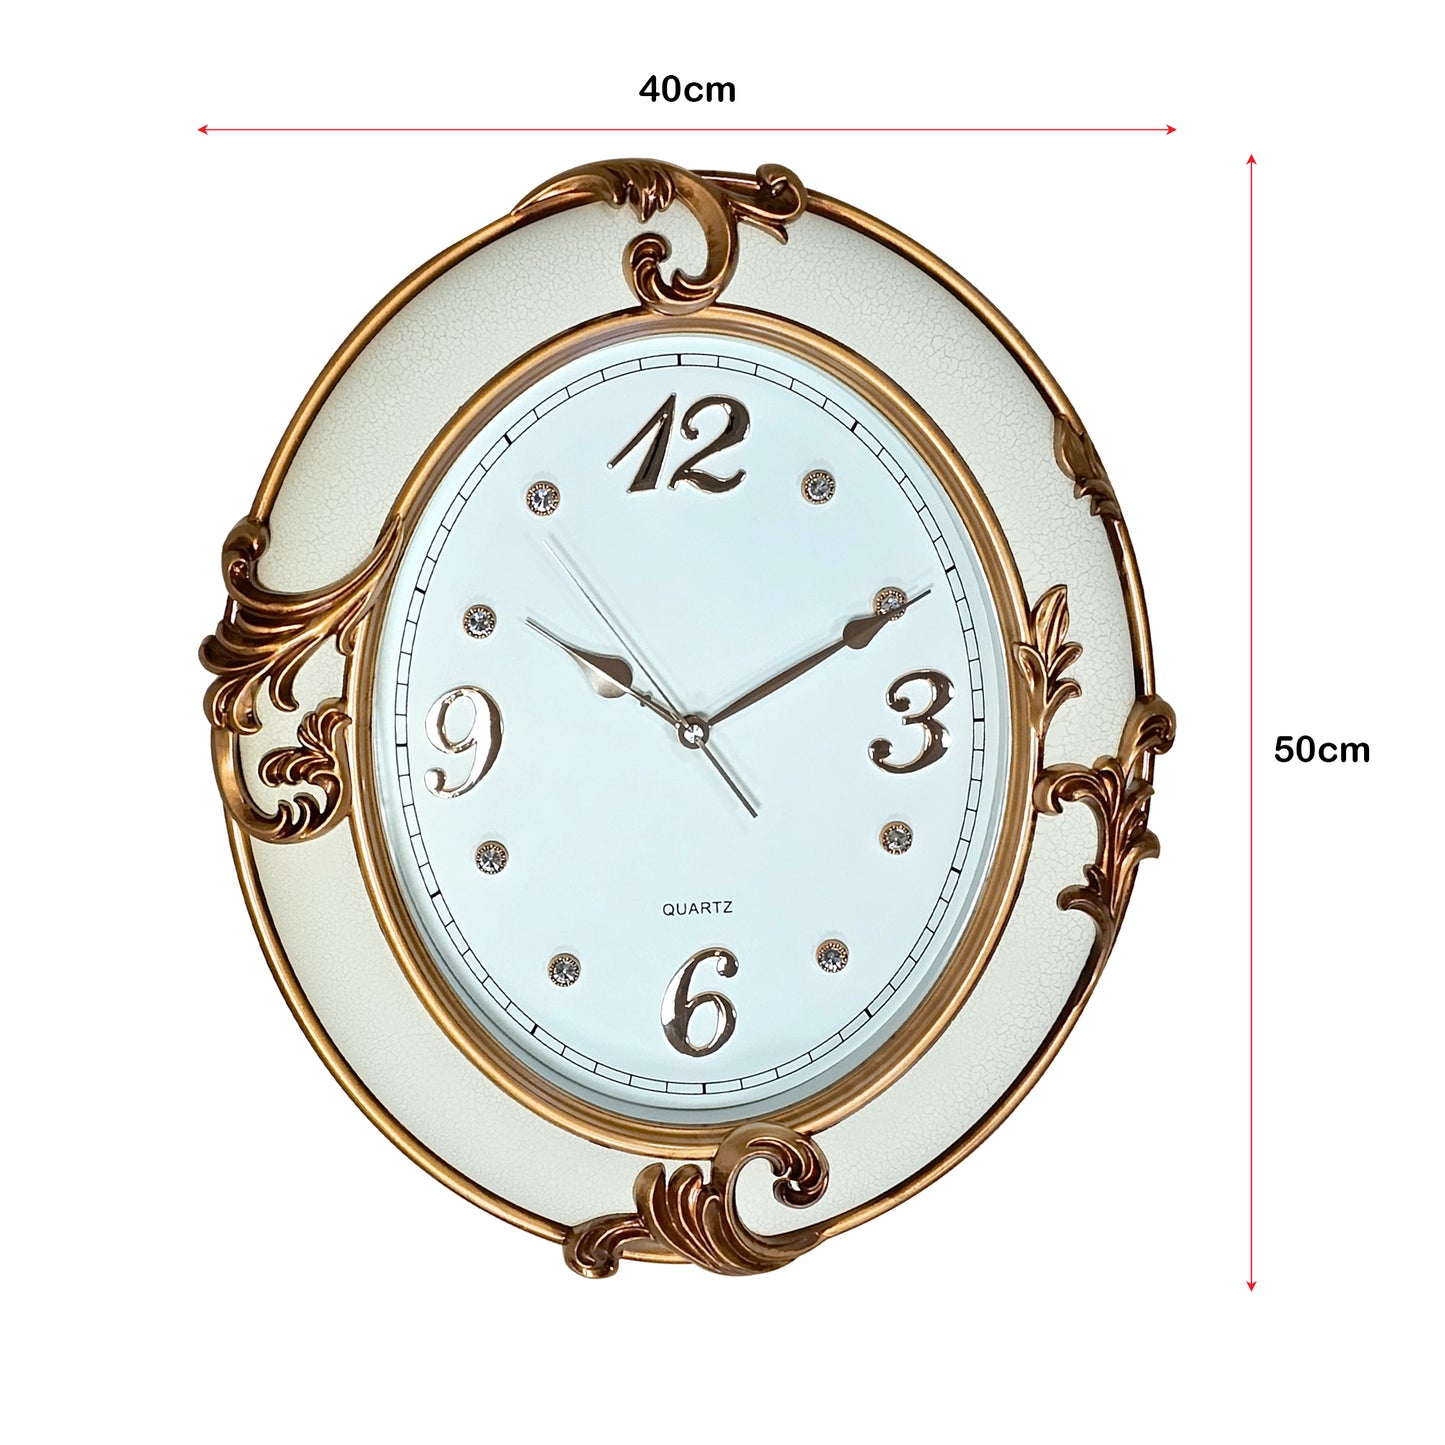 Oval Shape Wall Clock